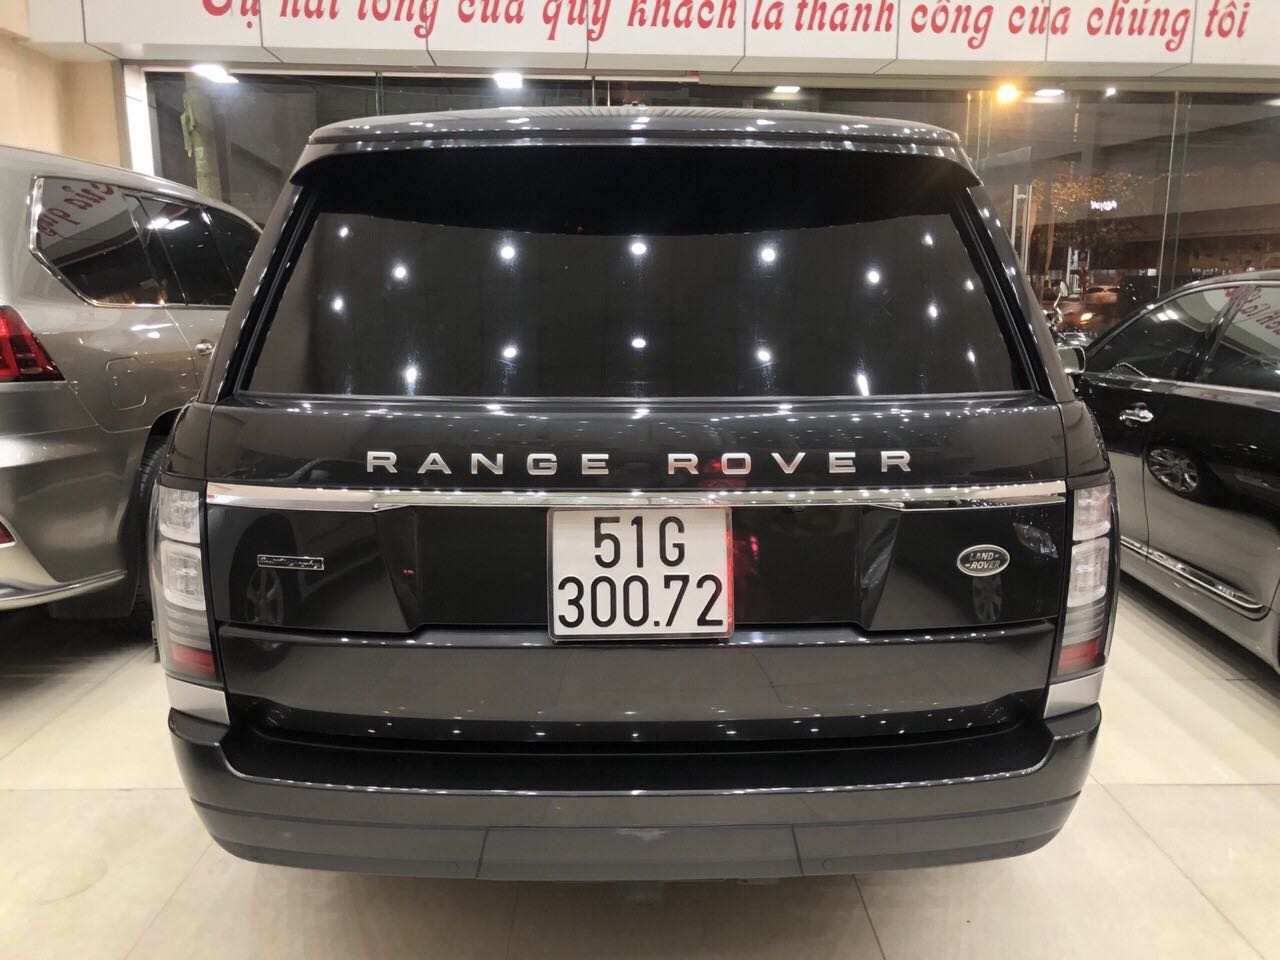 LandRover 2015 - Cần bán xe LandRover Range Rover năm 2015, màu đen nhập khẩu nguyên chiếc